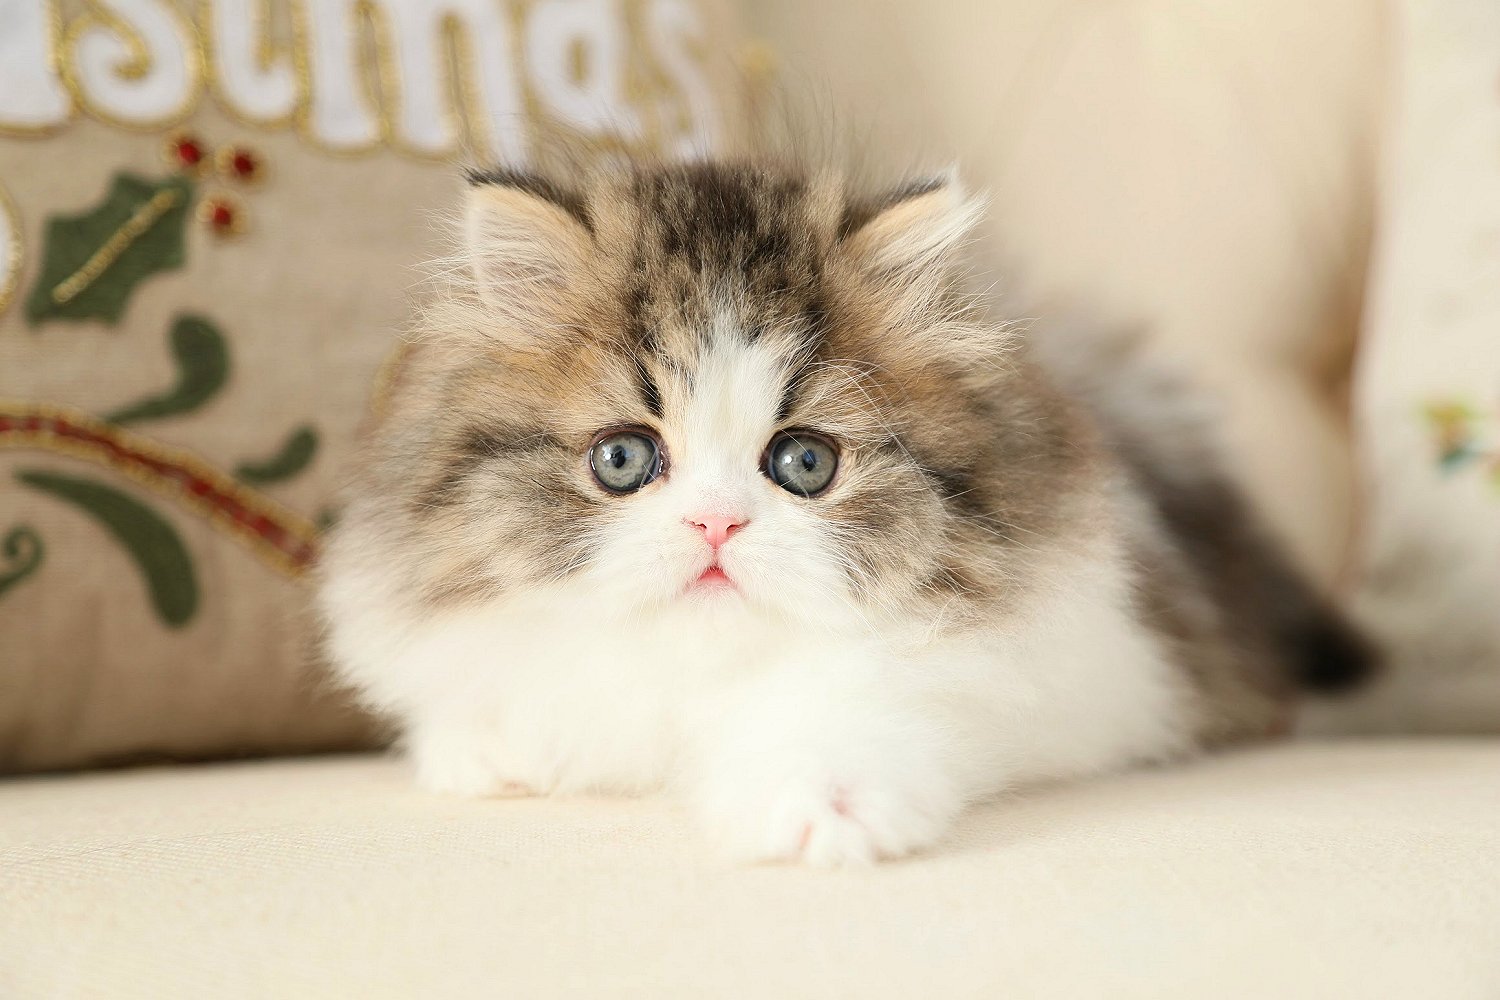 Shaded Golden & White Bicolor Persian Kitten